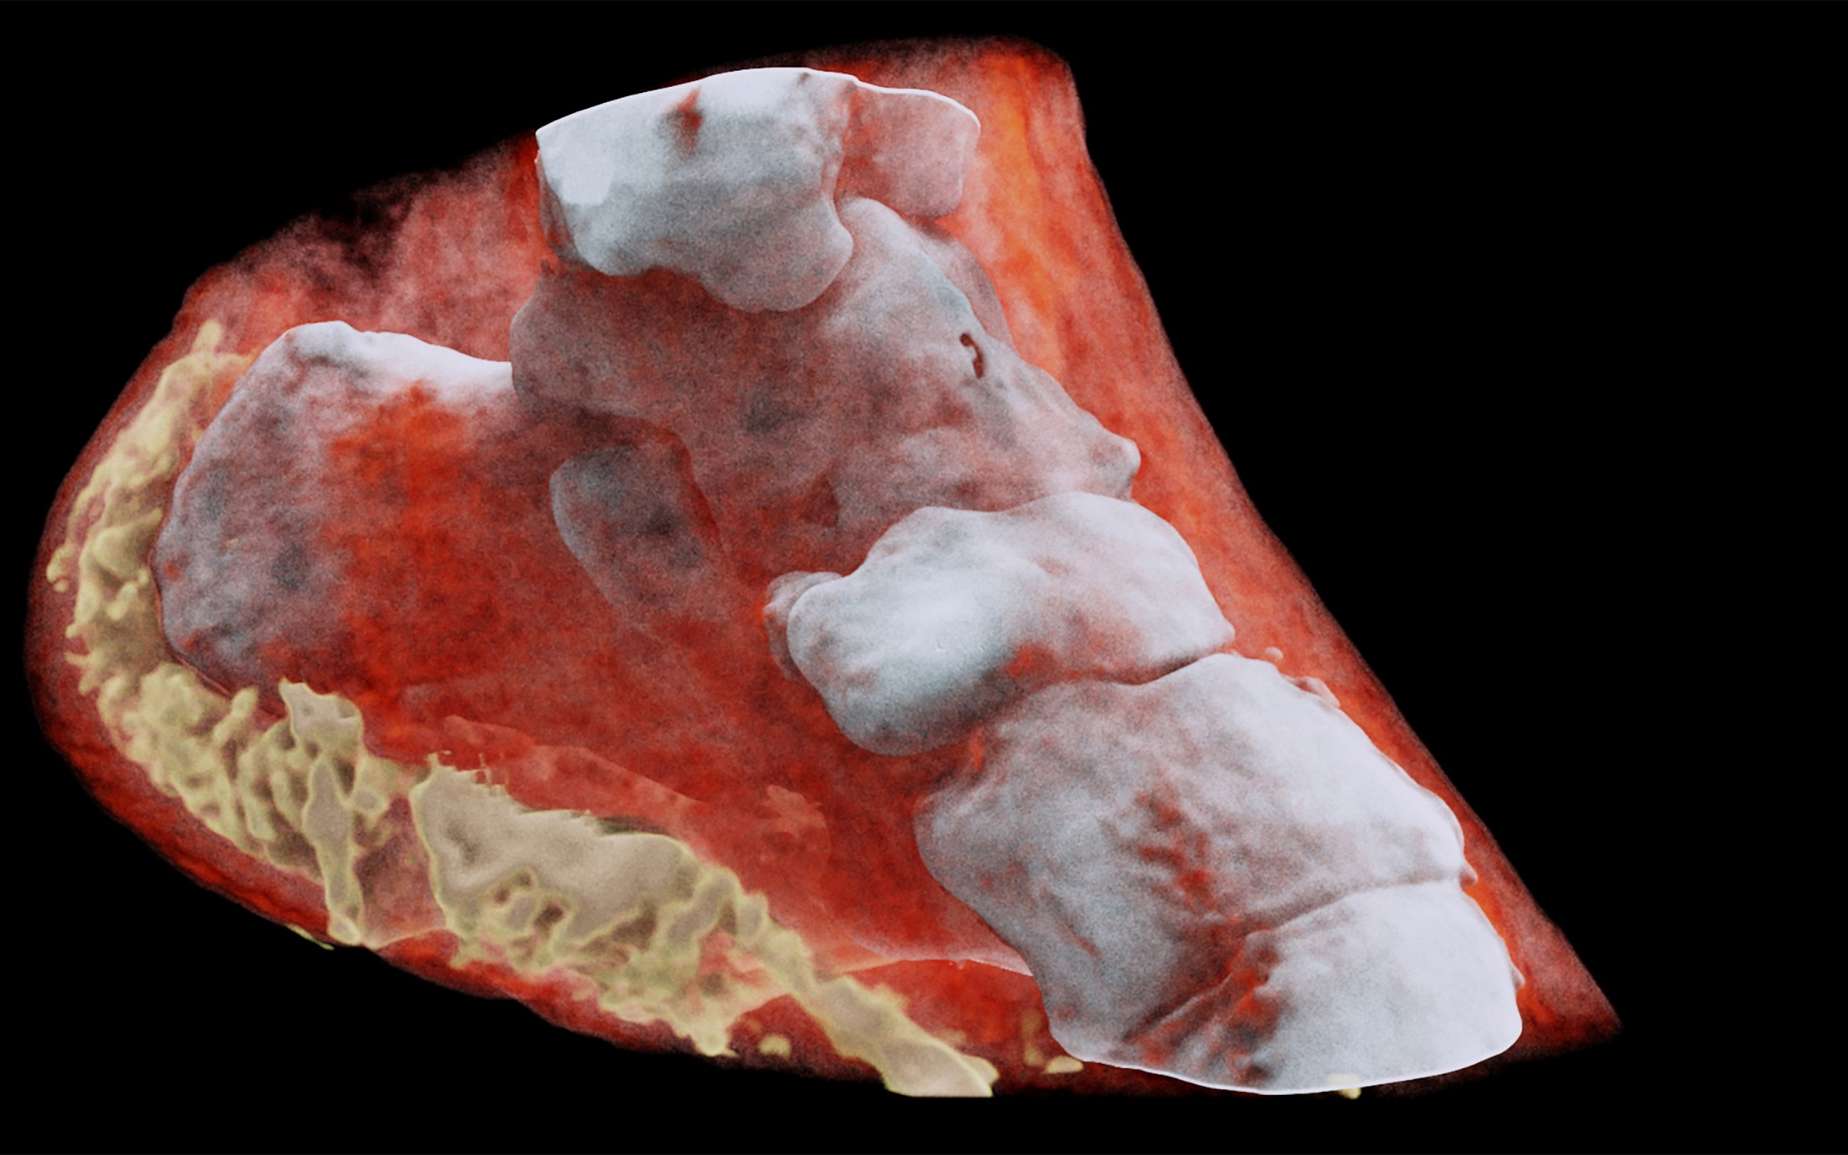 Imagerie médicale : le corps vu par radiographie 3D couleur, une première !